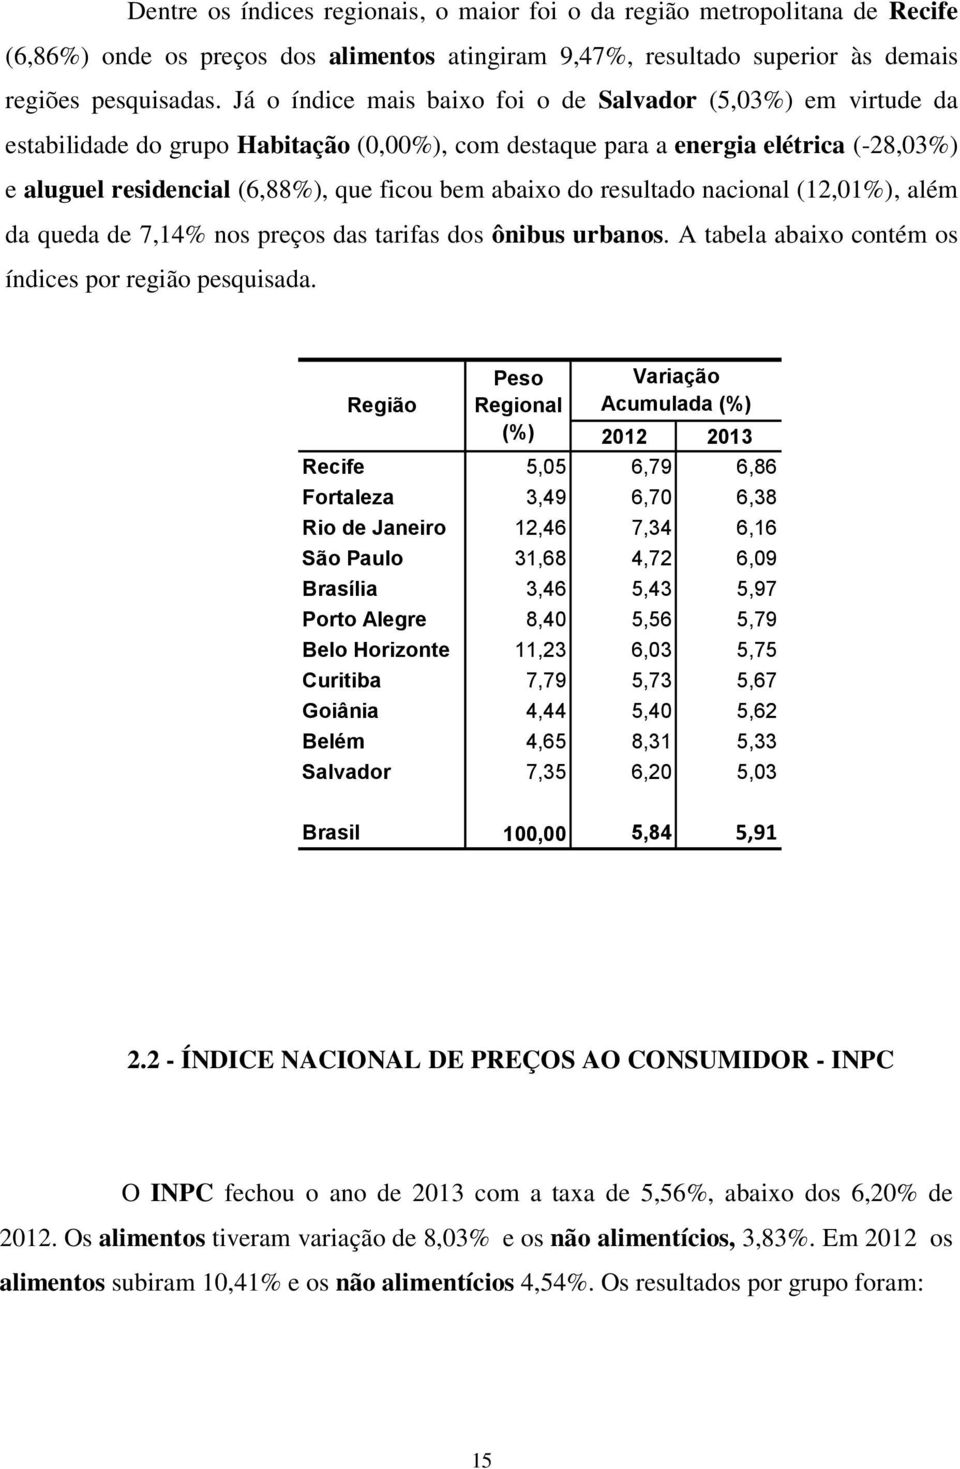 abaixo do resultado nacional (12,01%), além da queda de 7,14% nos preços das tarifas dos ônibus urbanos. A tabela abaixo contém os índices por região pesquisada.